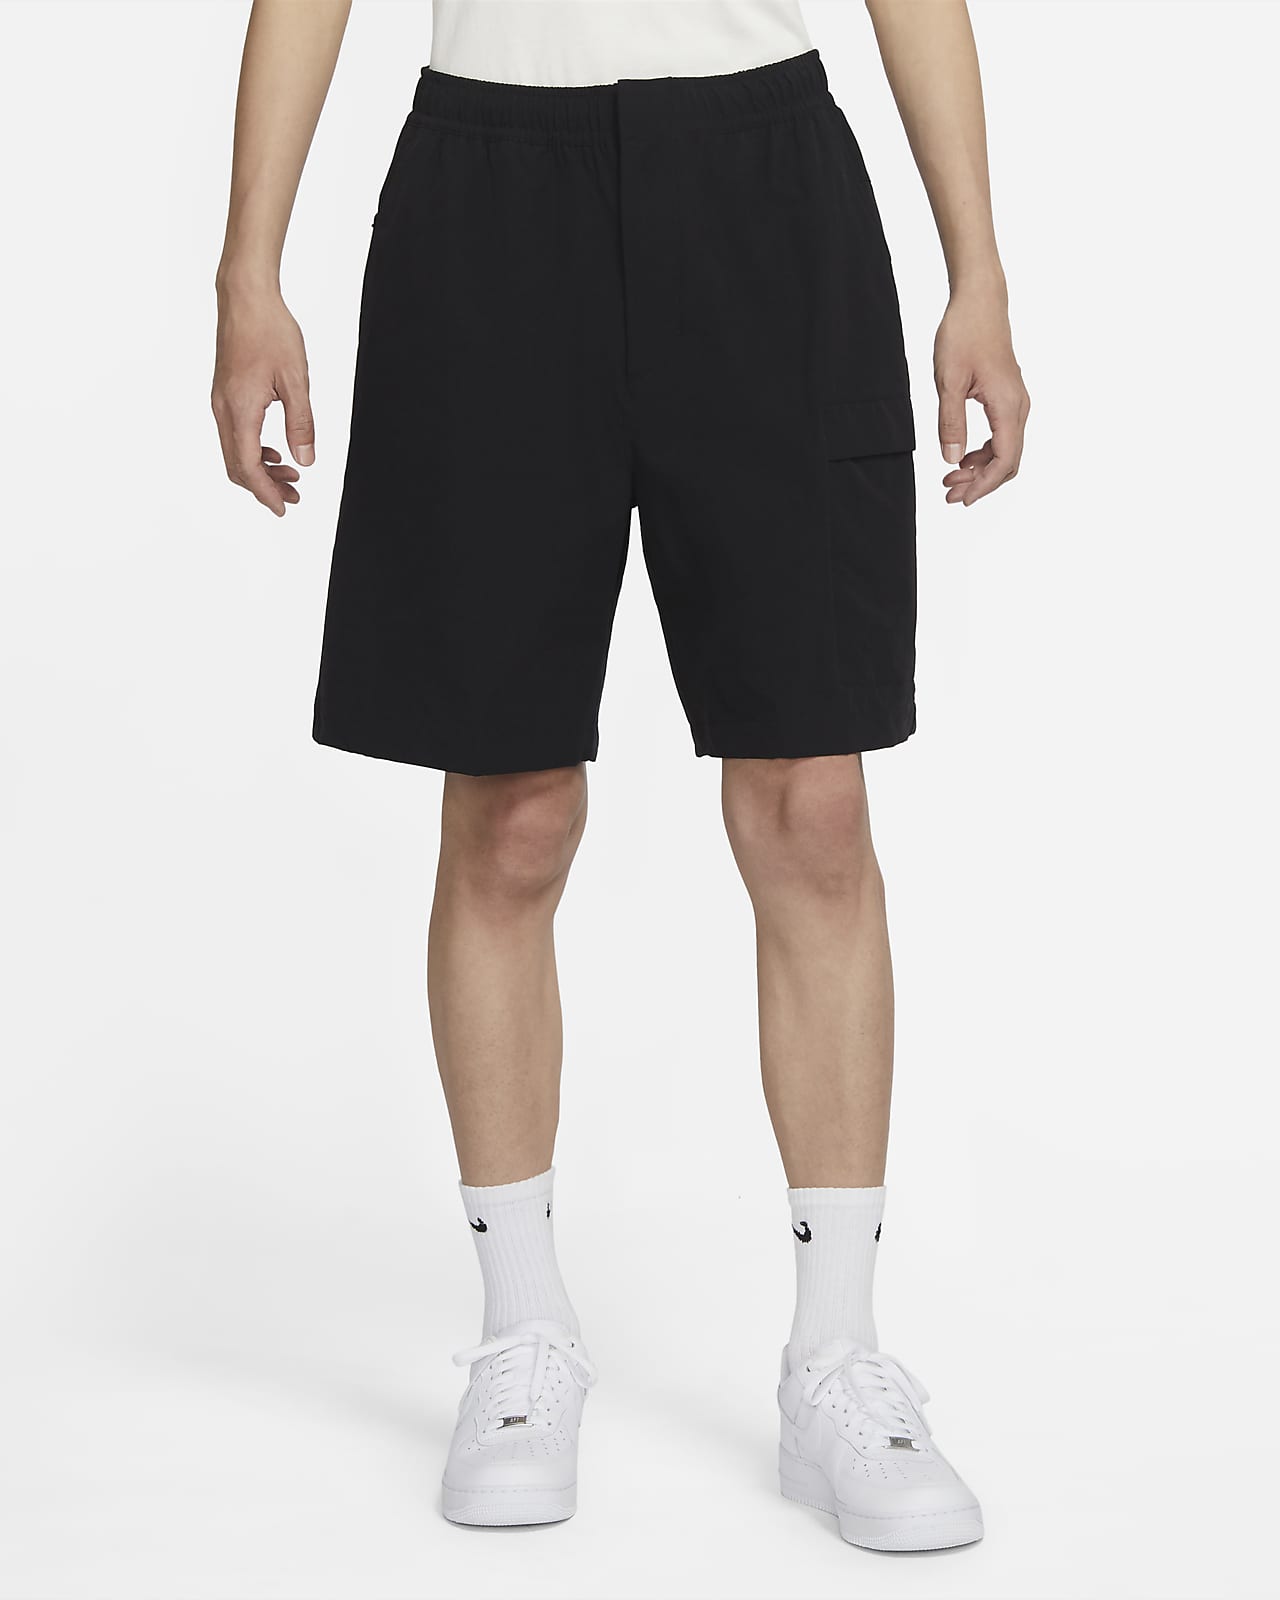 Nike Sportswear 男款多功能短褲